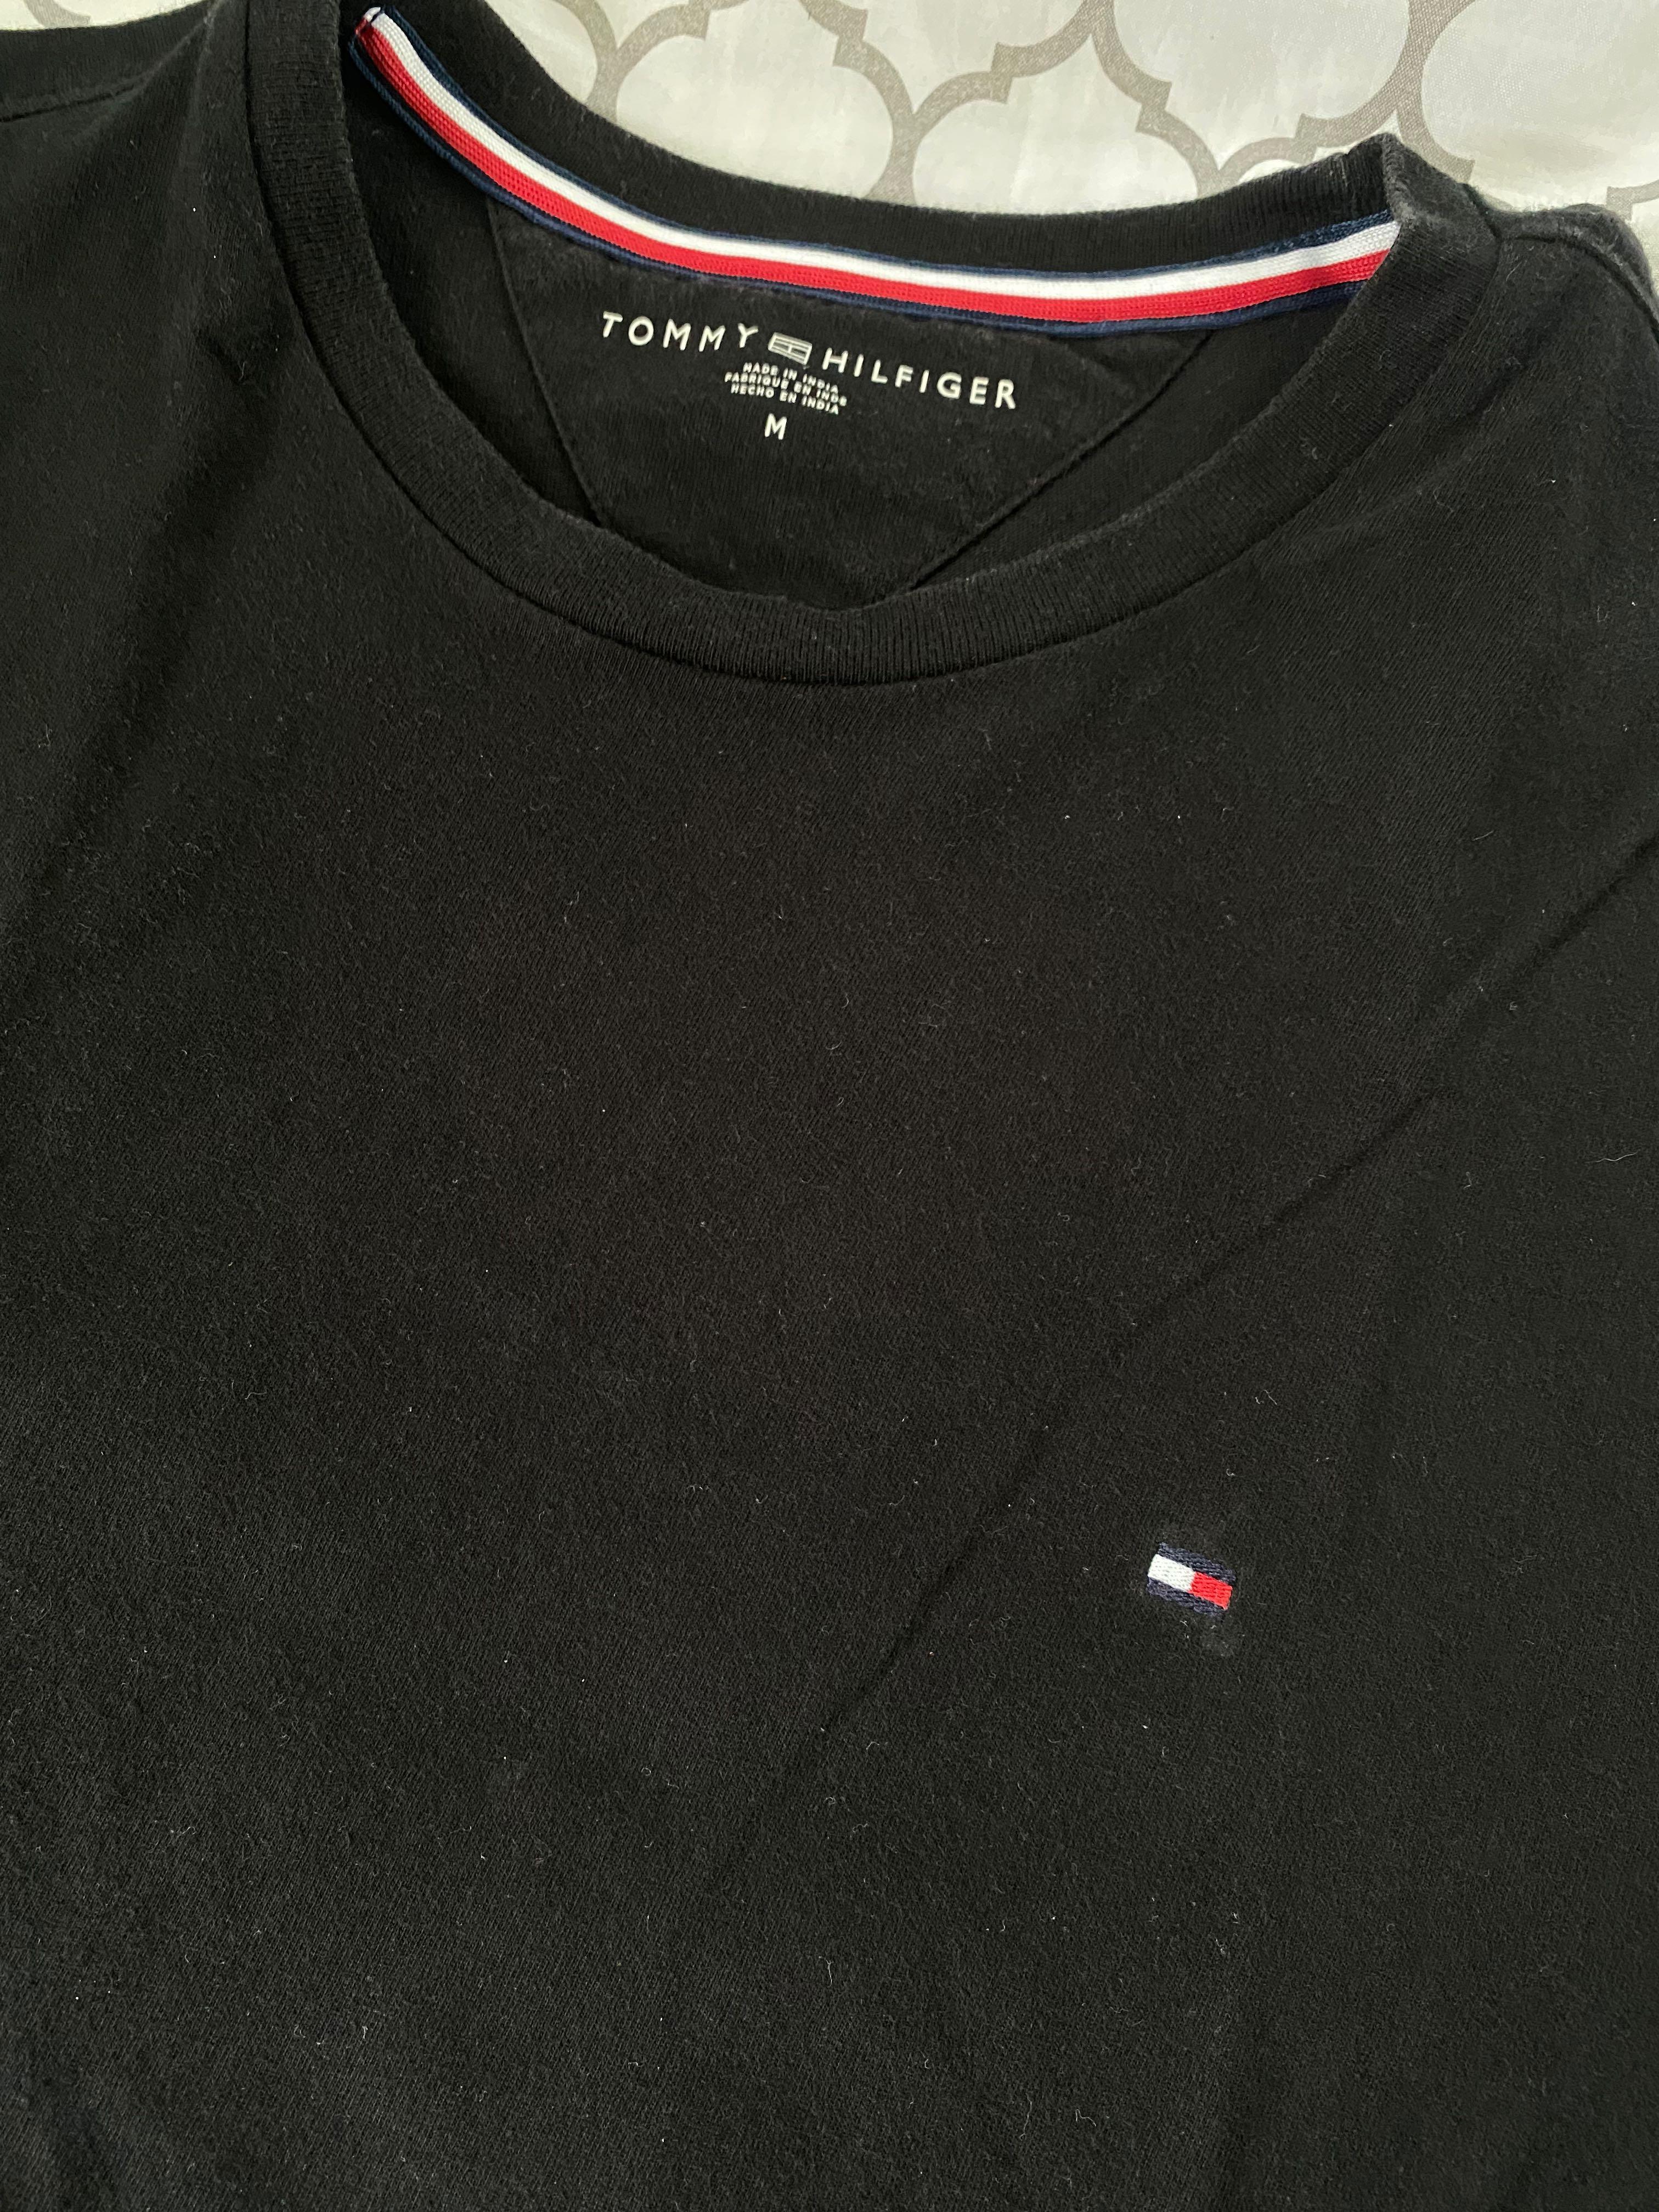 tommy hilfiger plain black t shirt Cheap Sale - OFF 64%